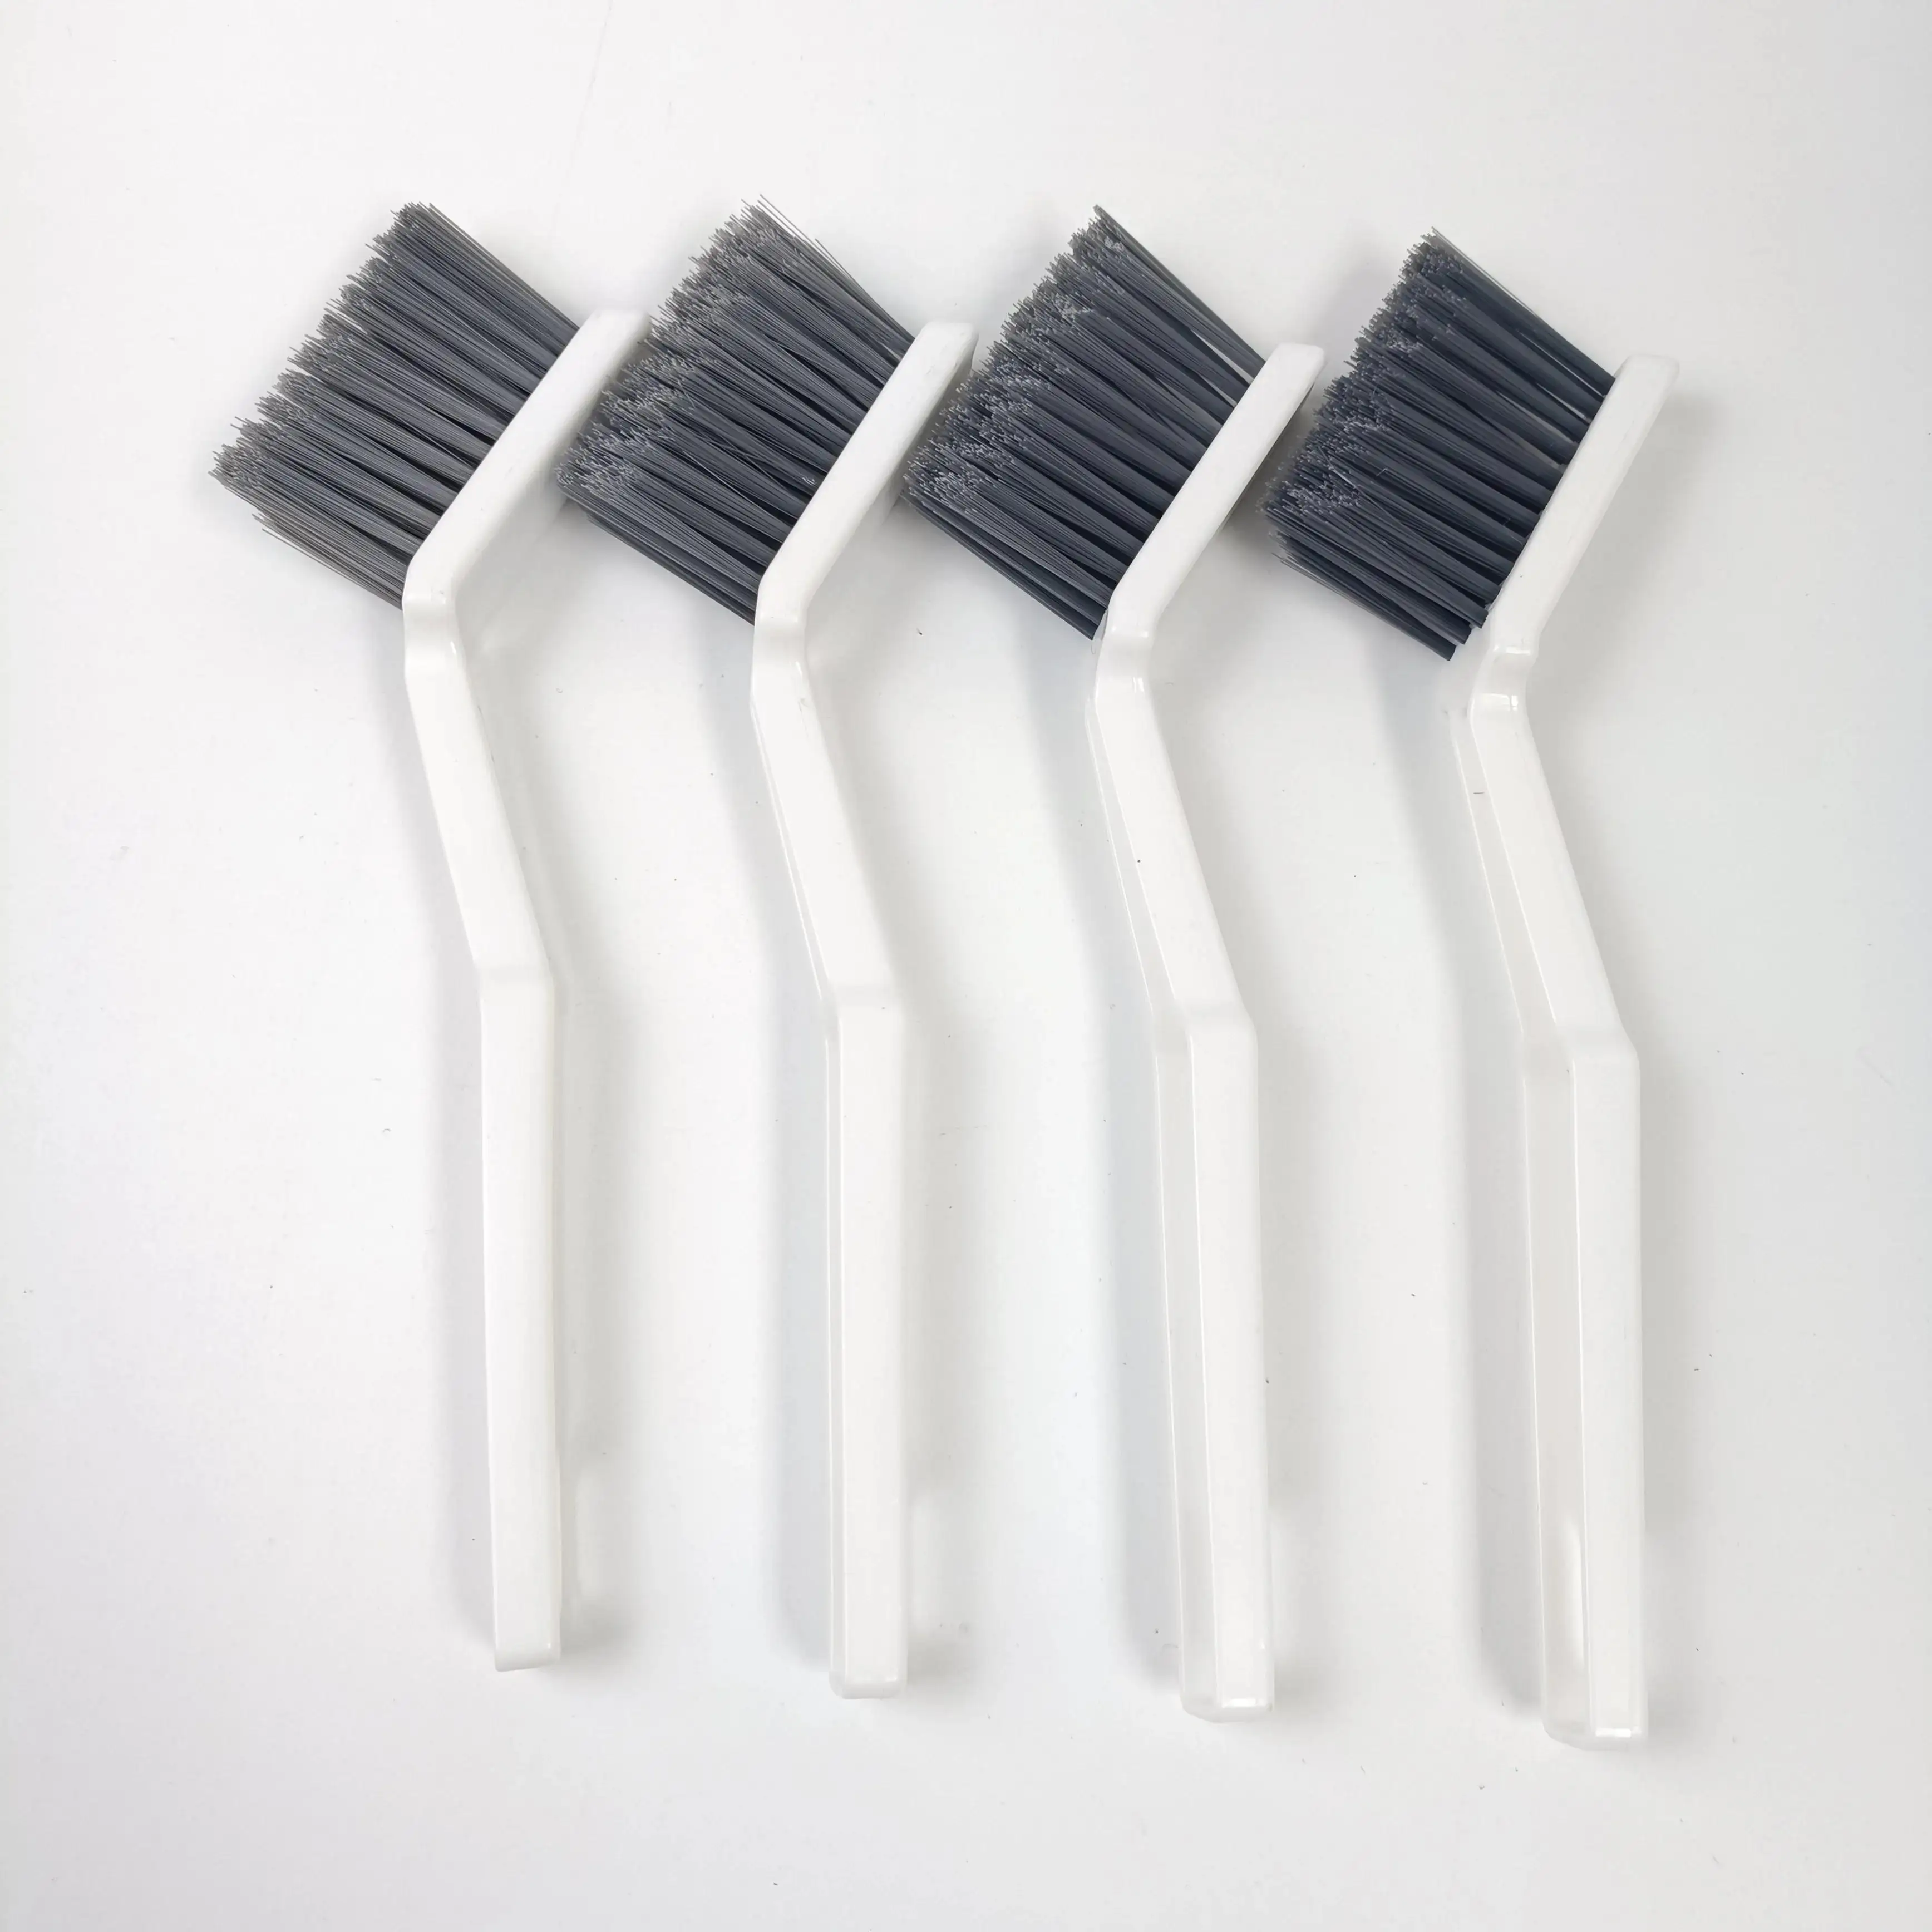 Escova de limpeza de cabo longo durável branca, molde de plástico para limpeza de lacunas, ideal para limpeza eficiente, mais vendida